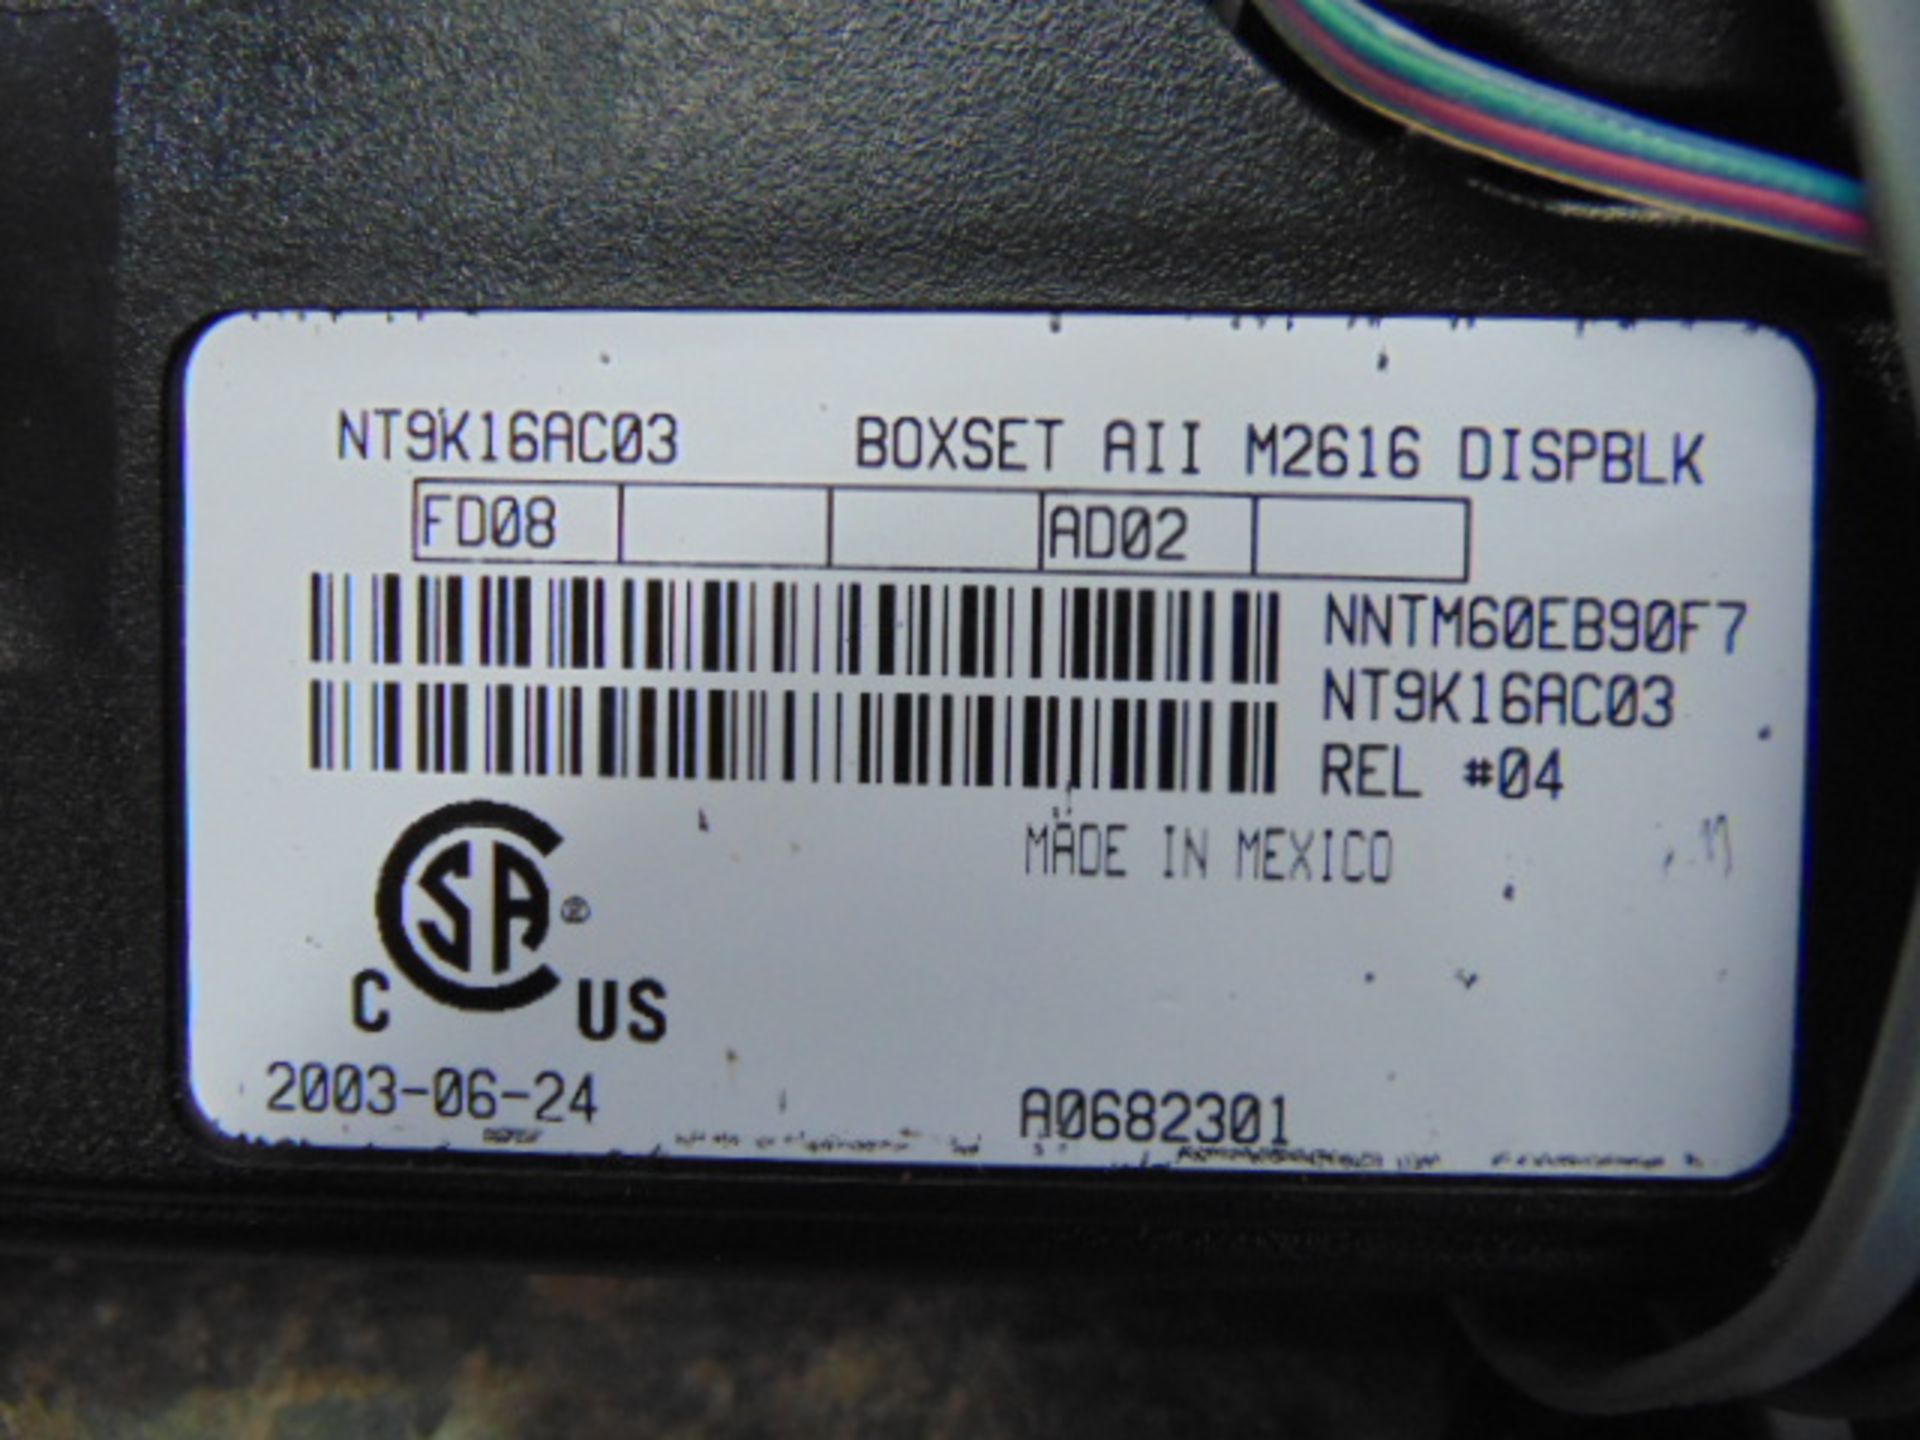 Approx 40 x Nortel Meridian M2616 Black LCD Display Speaker Telephones P/No NT9K16AC03 - Image 3 of 3